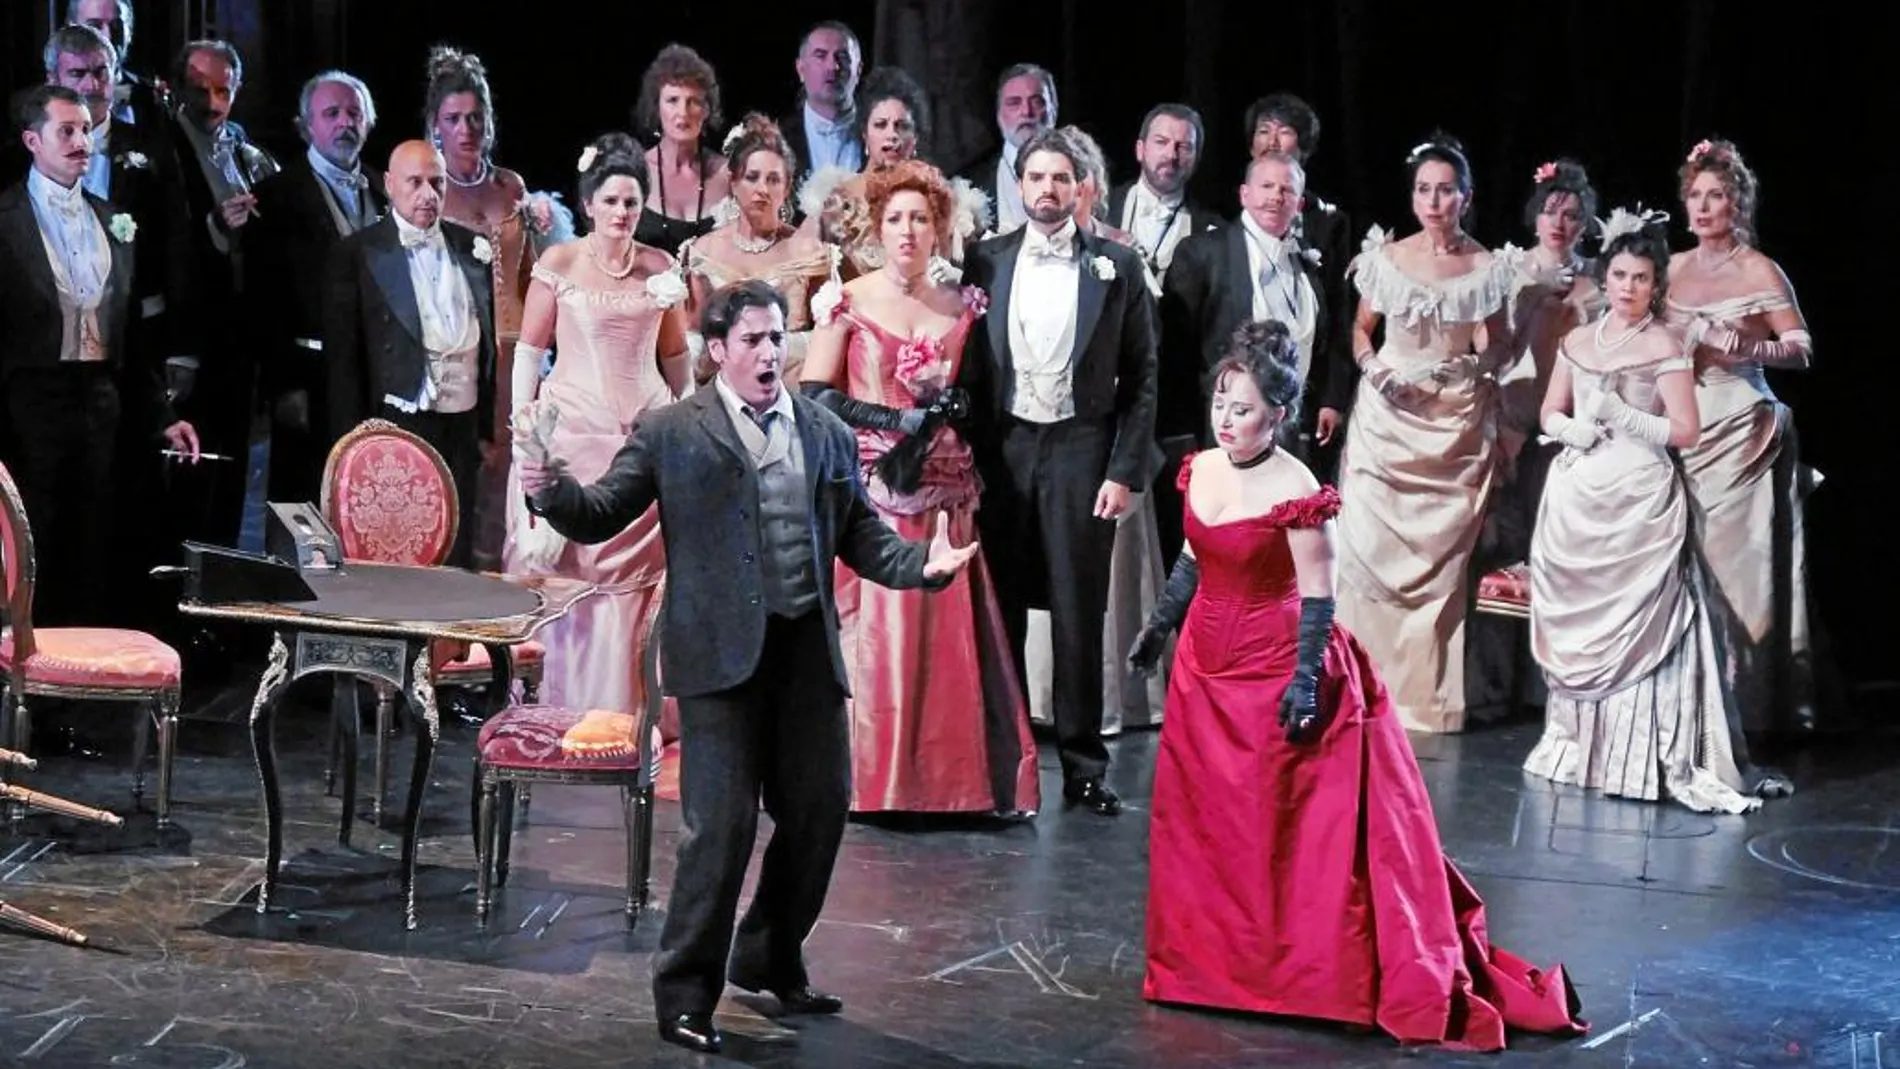 «La Traviata» cuenta con cantantes como Anita Herig, Leo Nucci, Ismael Jordi o Gemma Coma-Alabert, en una puesta en escena que dirige David McVicar y con dirección musical de Evelino Pidò. Una excelente forma de recuperar la gran ópera de repertorio verdiano